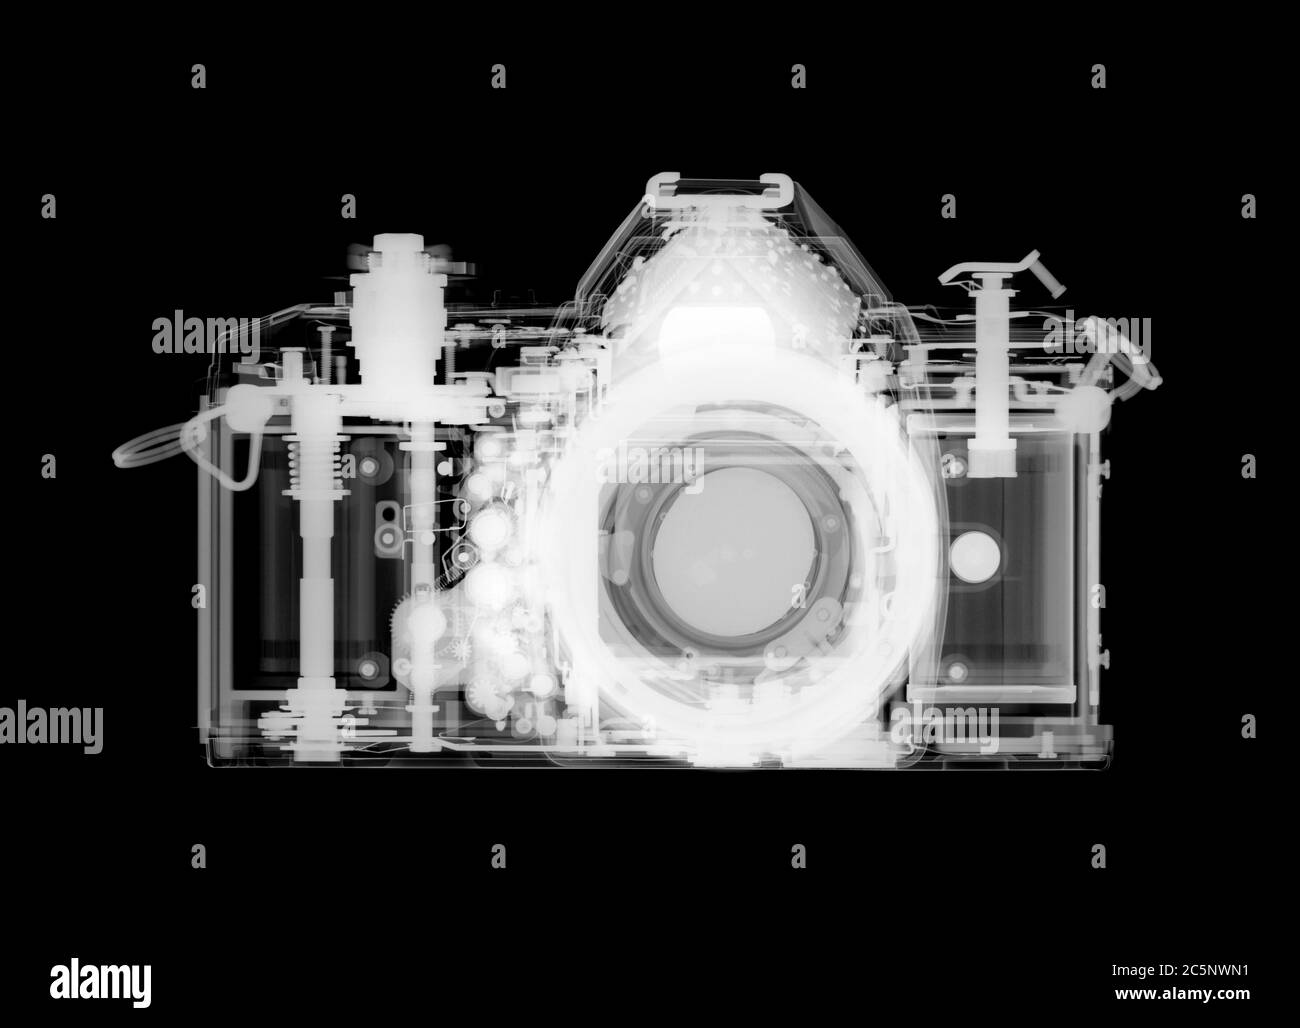 35mm film camera, X-ray. Stock Photo